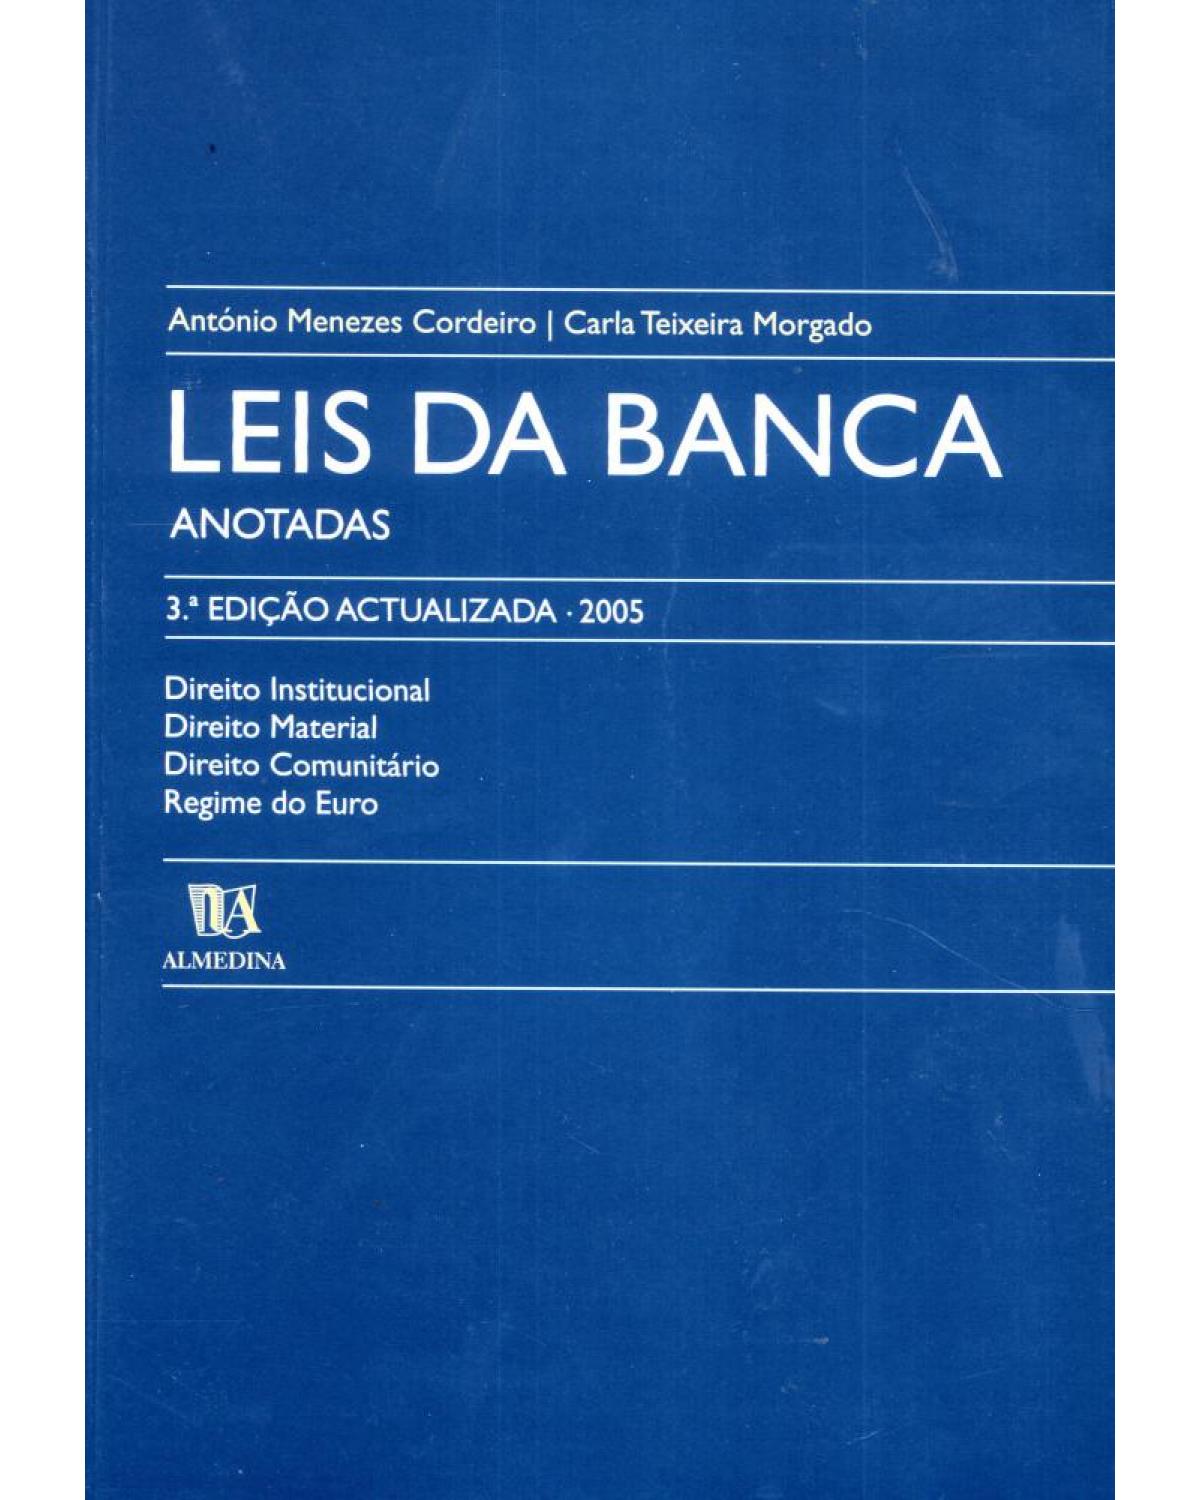 Leis da banca - anotadas - 3ª Edição | 2005